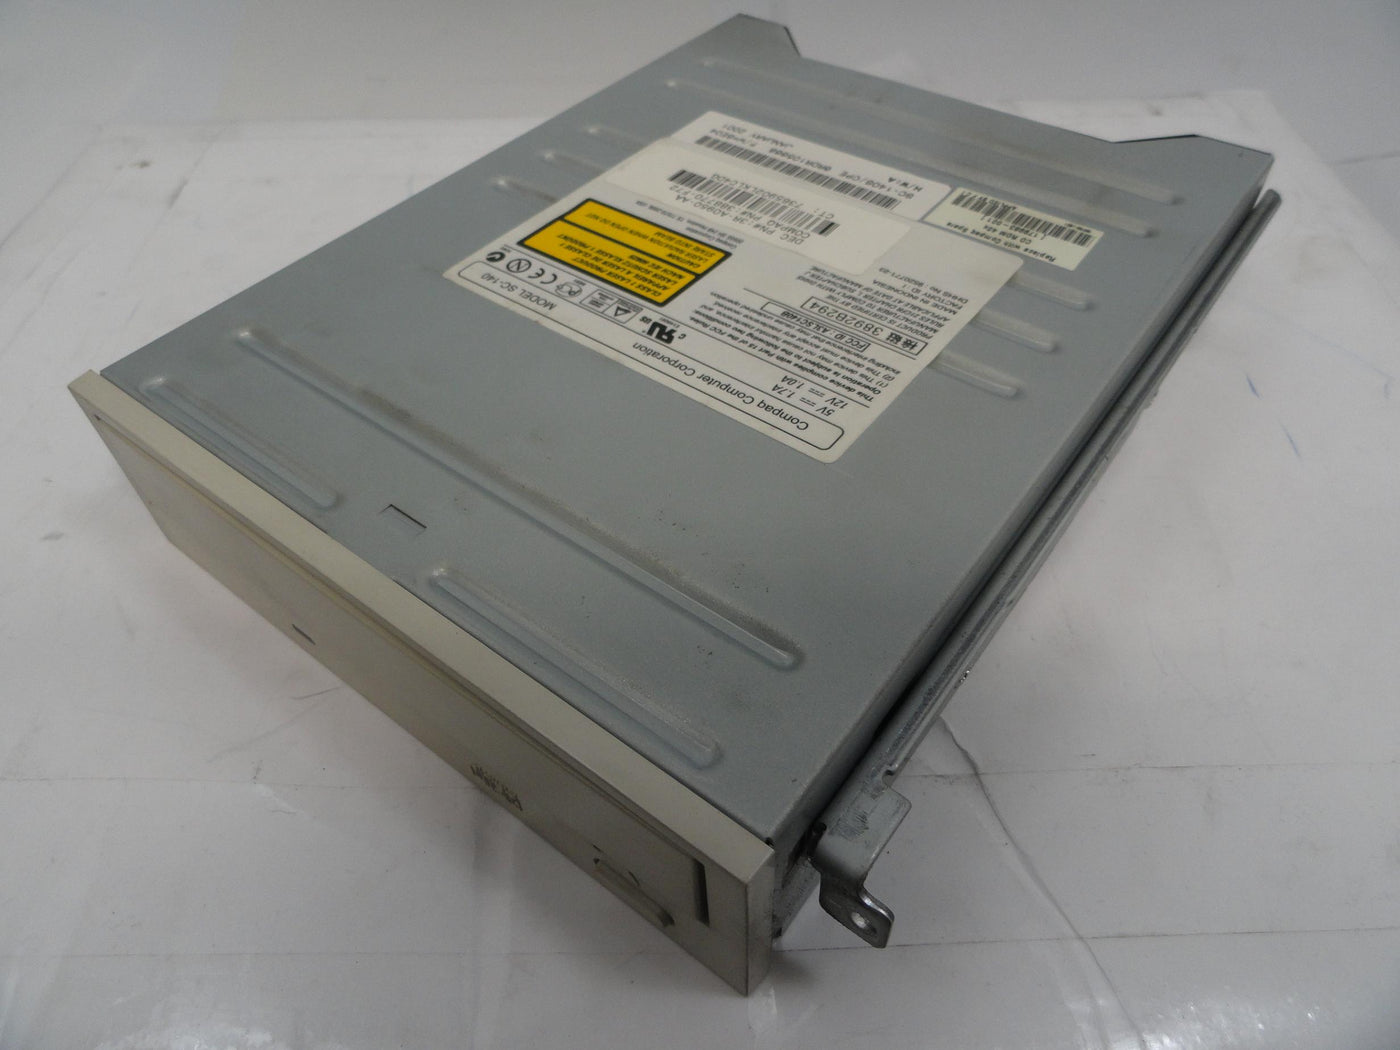 PR16664_SC-140S/CPE_Compaq 5.25in White CD ROM Drive - Image3